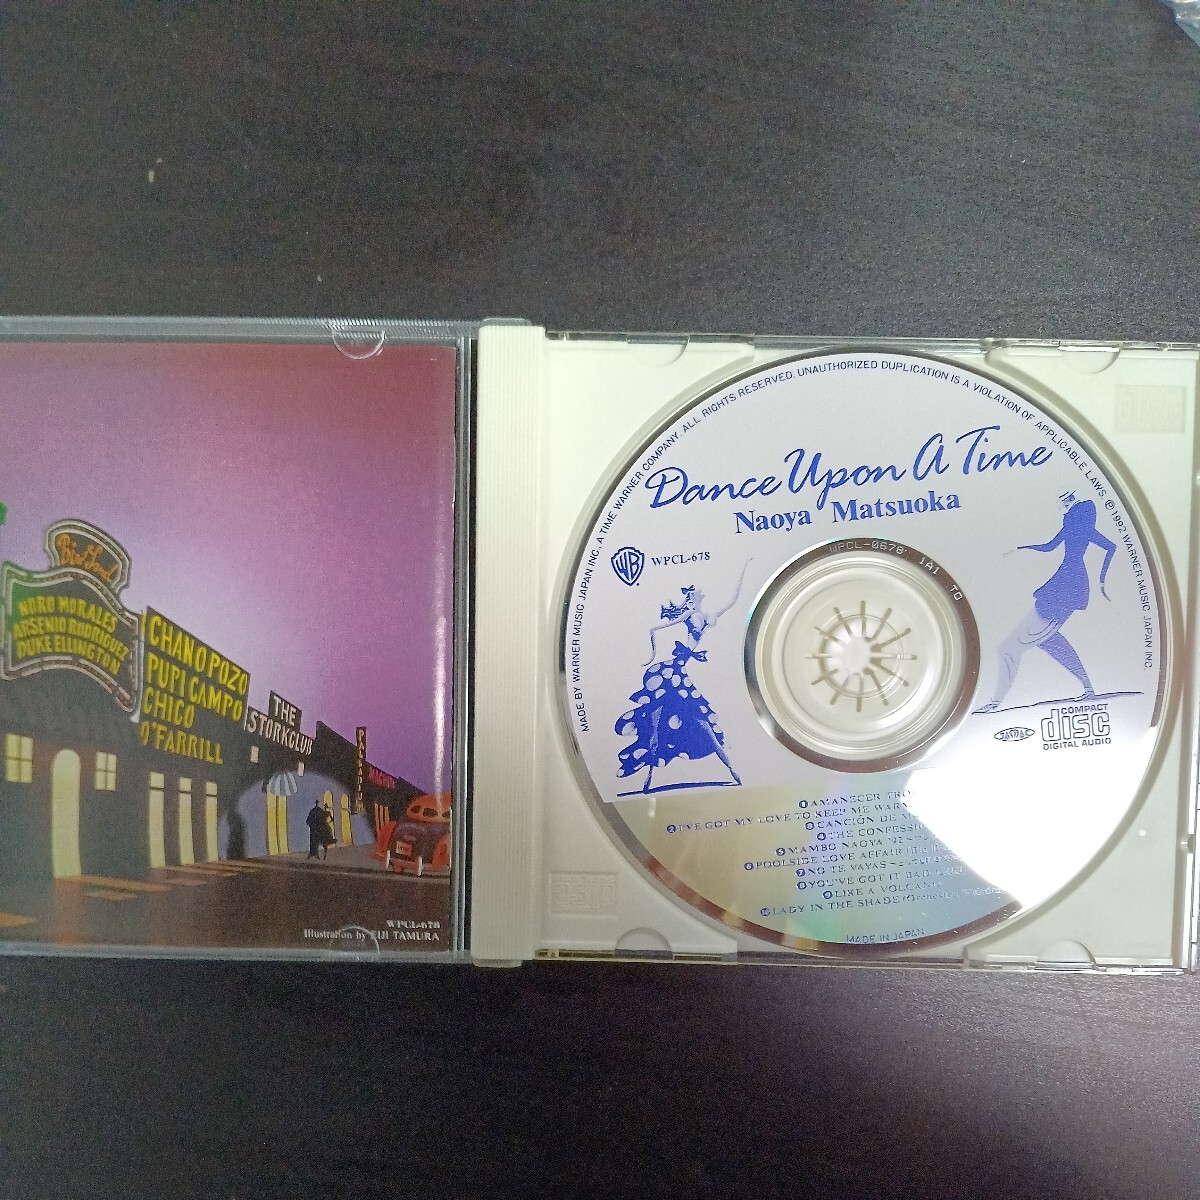 松岡直也 Dance Upon A Time CD